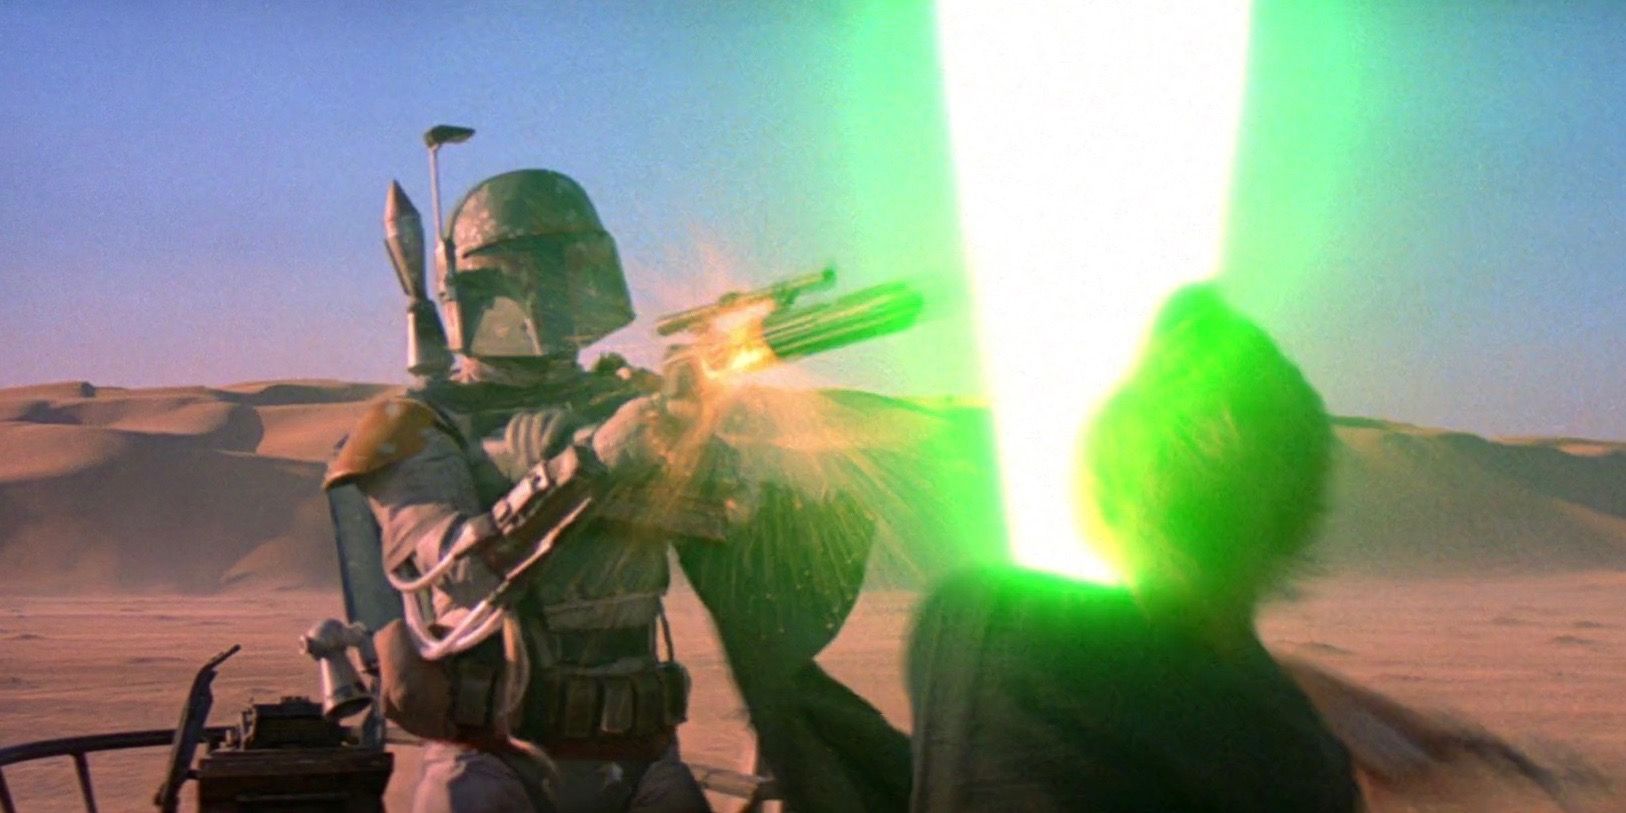 Boba Fett and Luke Skywalker in Star Wars Episode VI Return of the Jedi